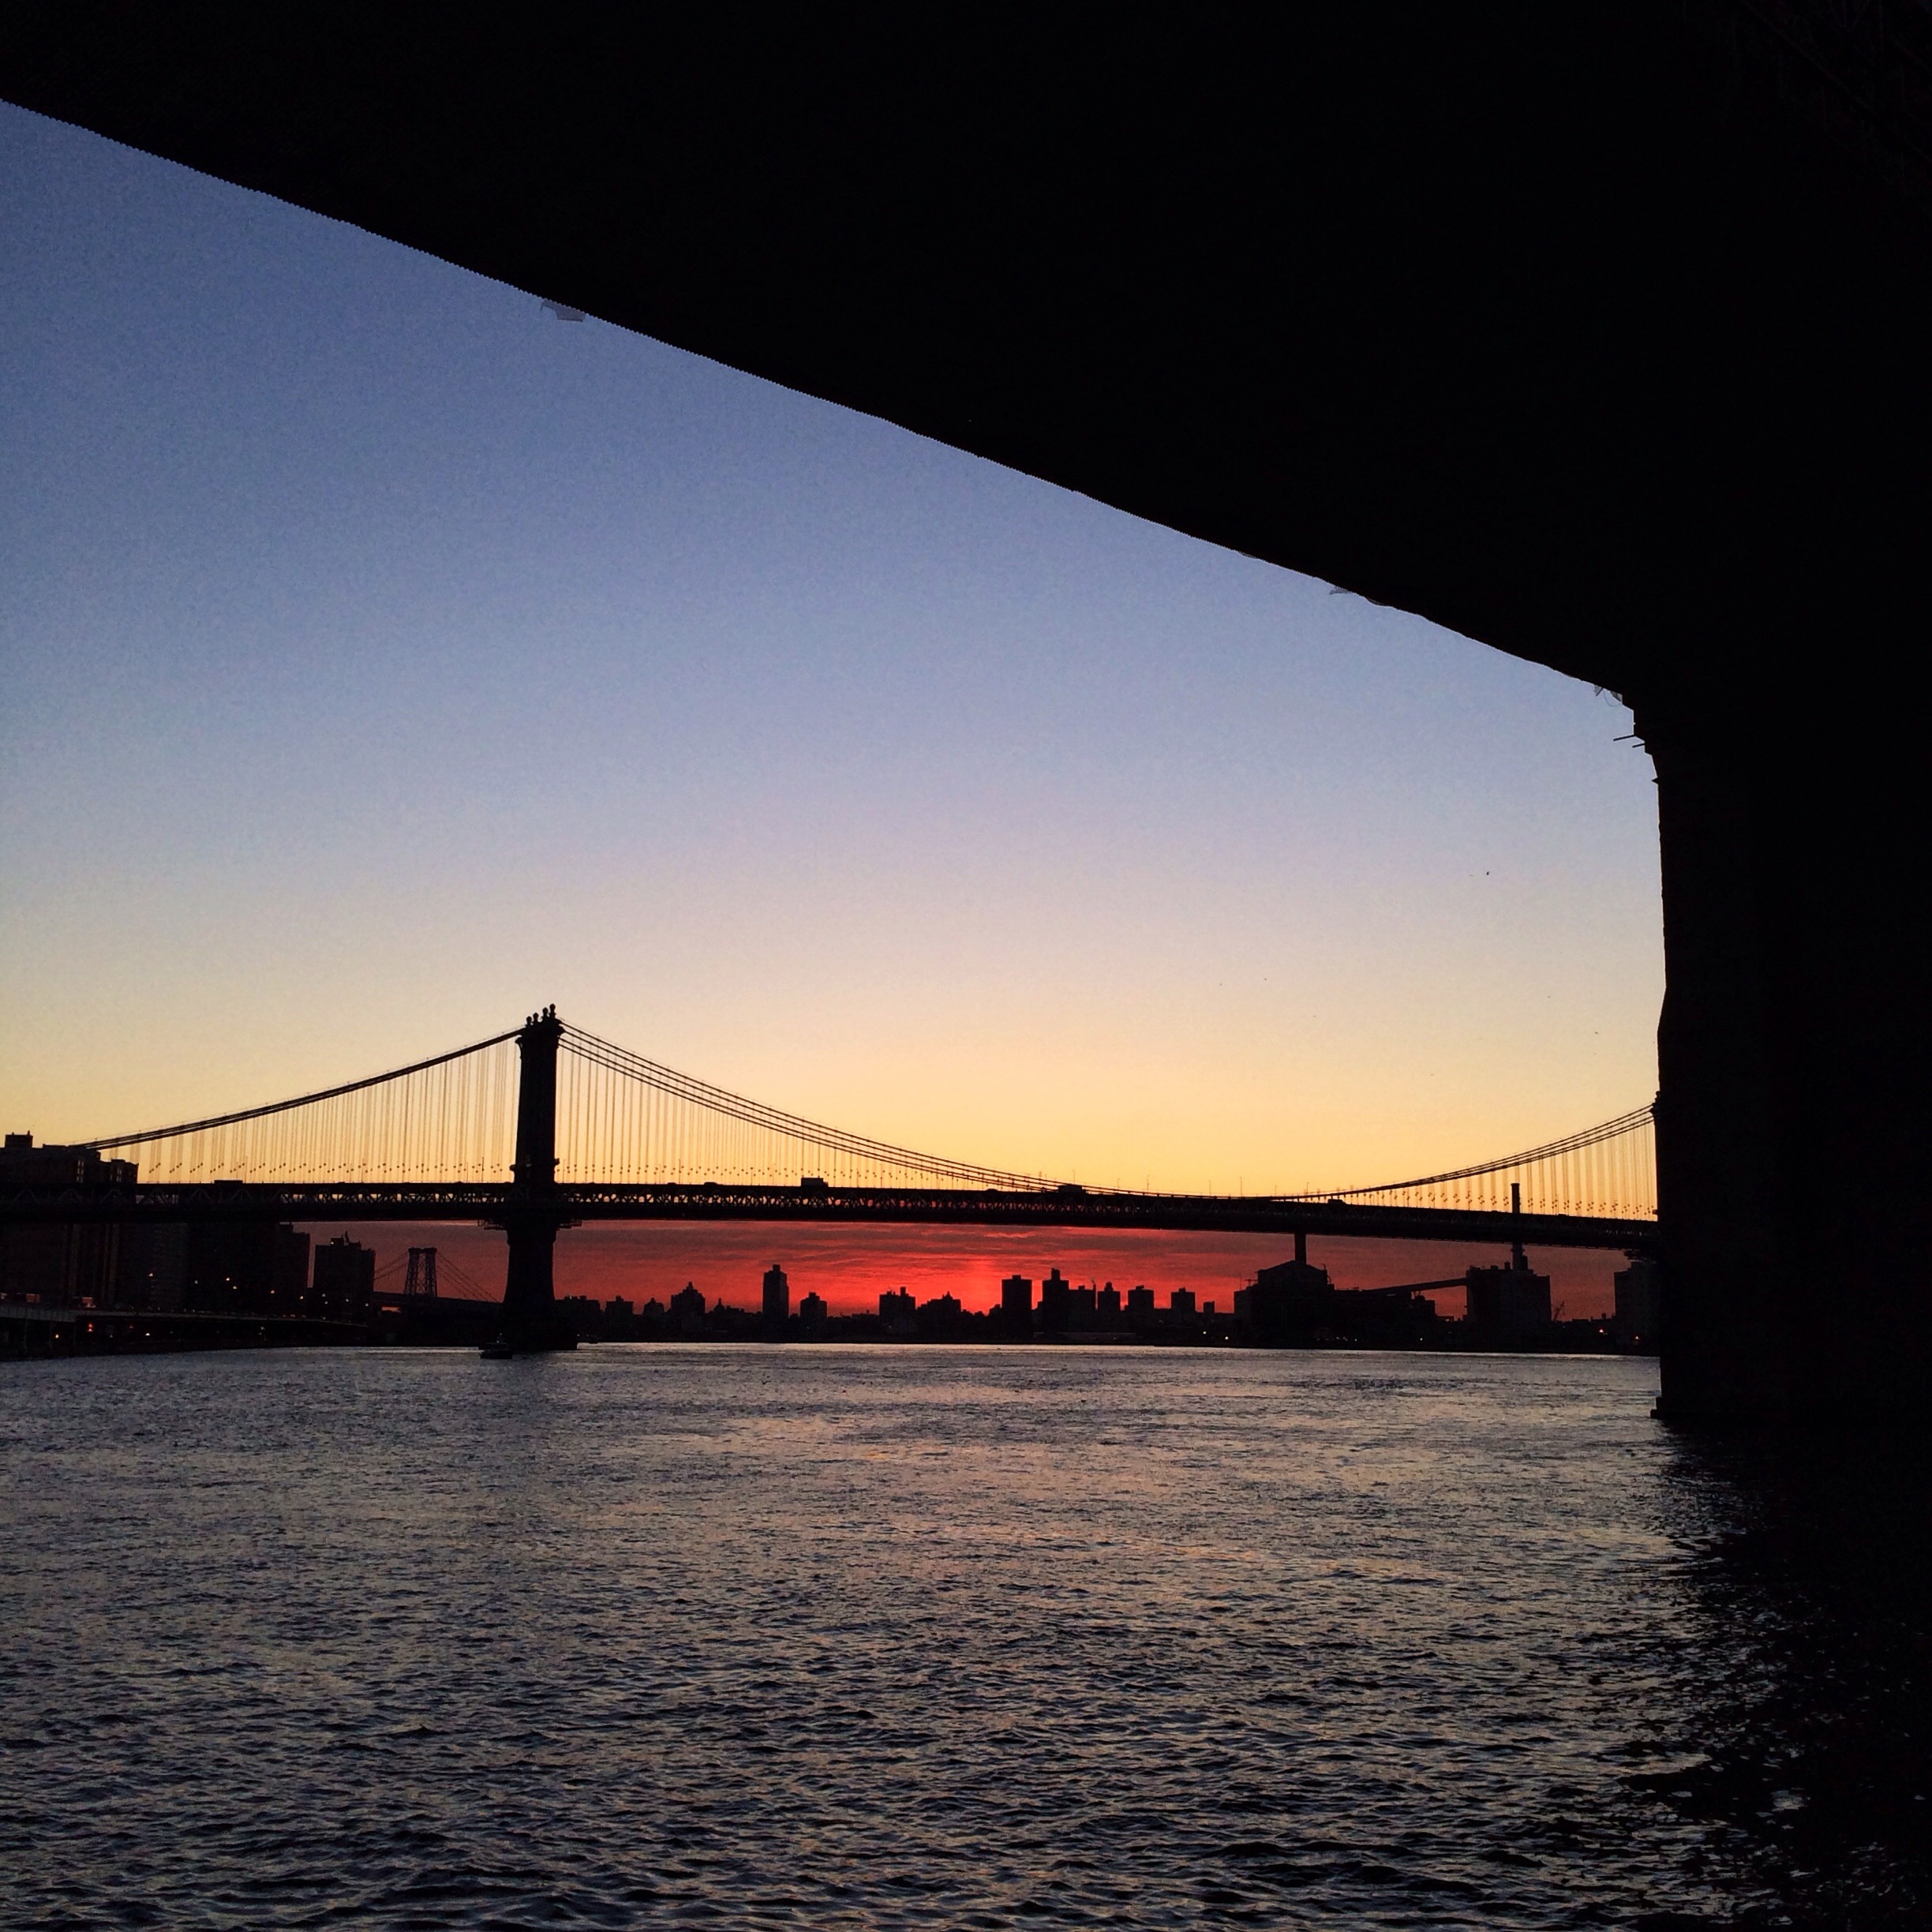 Sunrise under the bridge